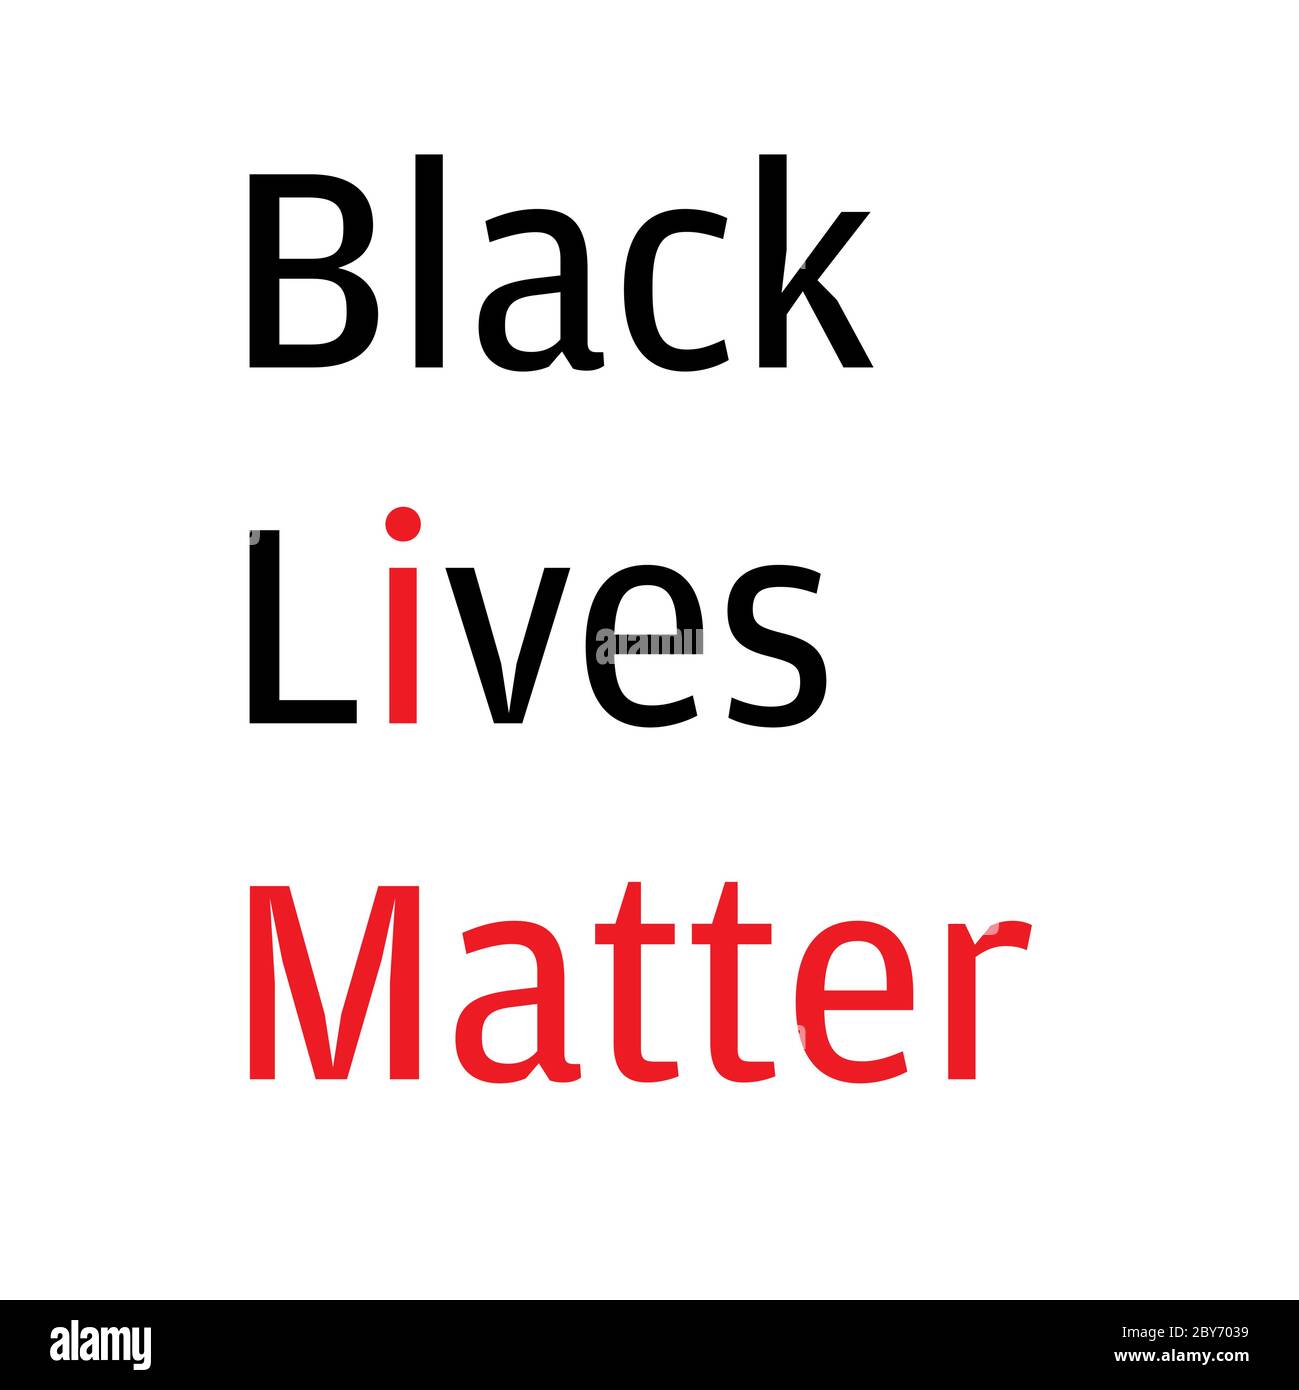 Black Lives Matter (BLM) ilustración gráfica para ser utilizada como cartel para crear conciencia sobre la desigualdad racial. Brutalidad policial y prejuicios contra Afr Ilustración del Vector